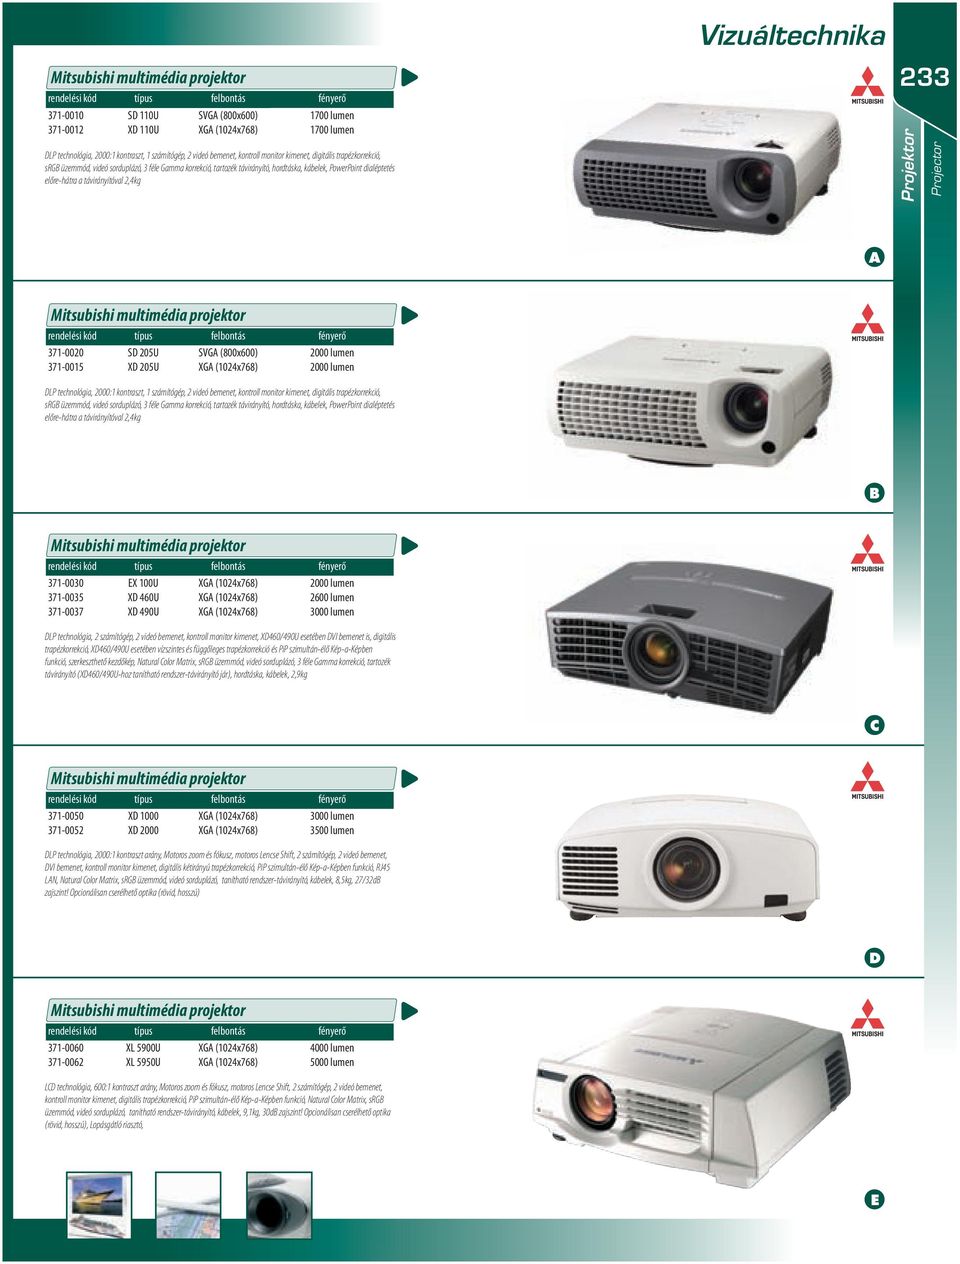 távirányítóval,4kg 33 Projektor Projector Mitsubishi multimédia projektor rendelési kód típus felbontás fényerő 37-000 37-005 S 05U X 05U SVG (800x600) XG (04x768) 000 lumen 000 lumen LP technológia,